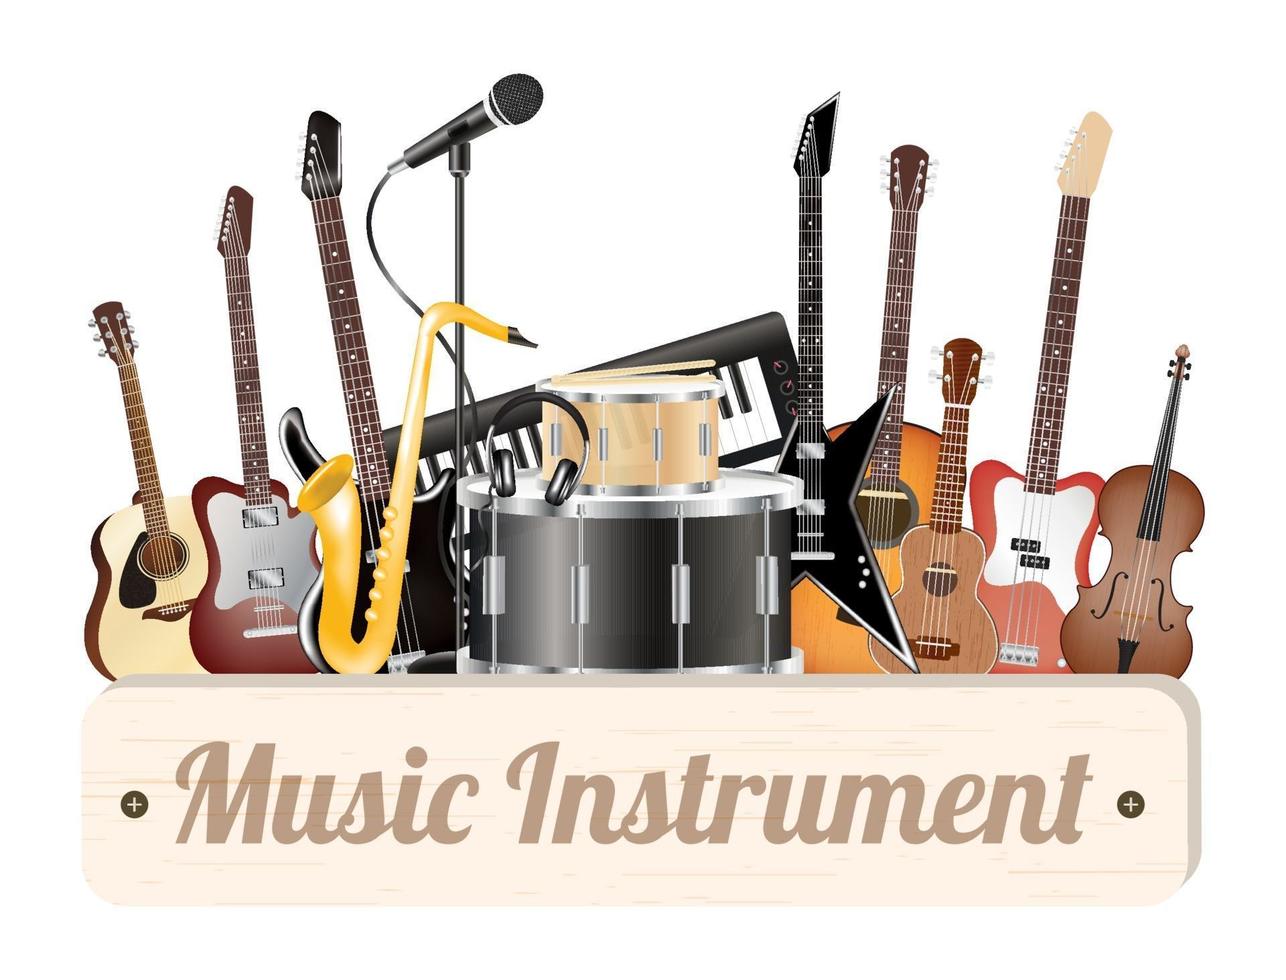 muziekinstrument houten bord met elektrische akoestische gitaar, bas, drum, snare viool, ukelele, saxofoon, keyboard, microfoon en hoofdtelefoon vector